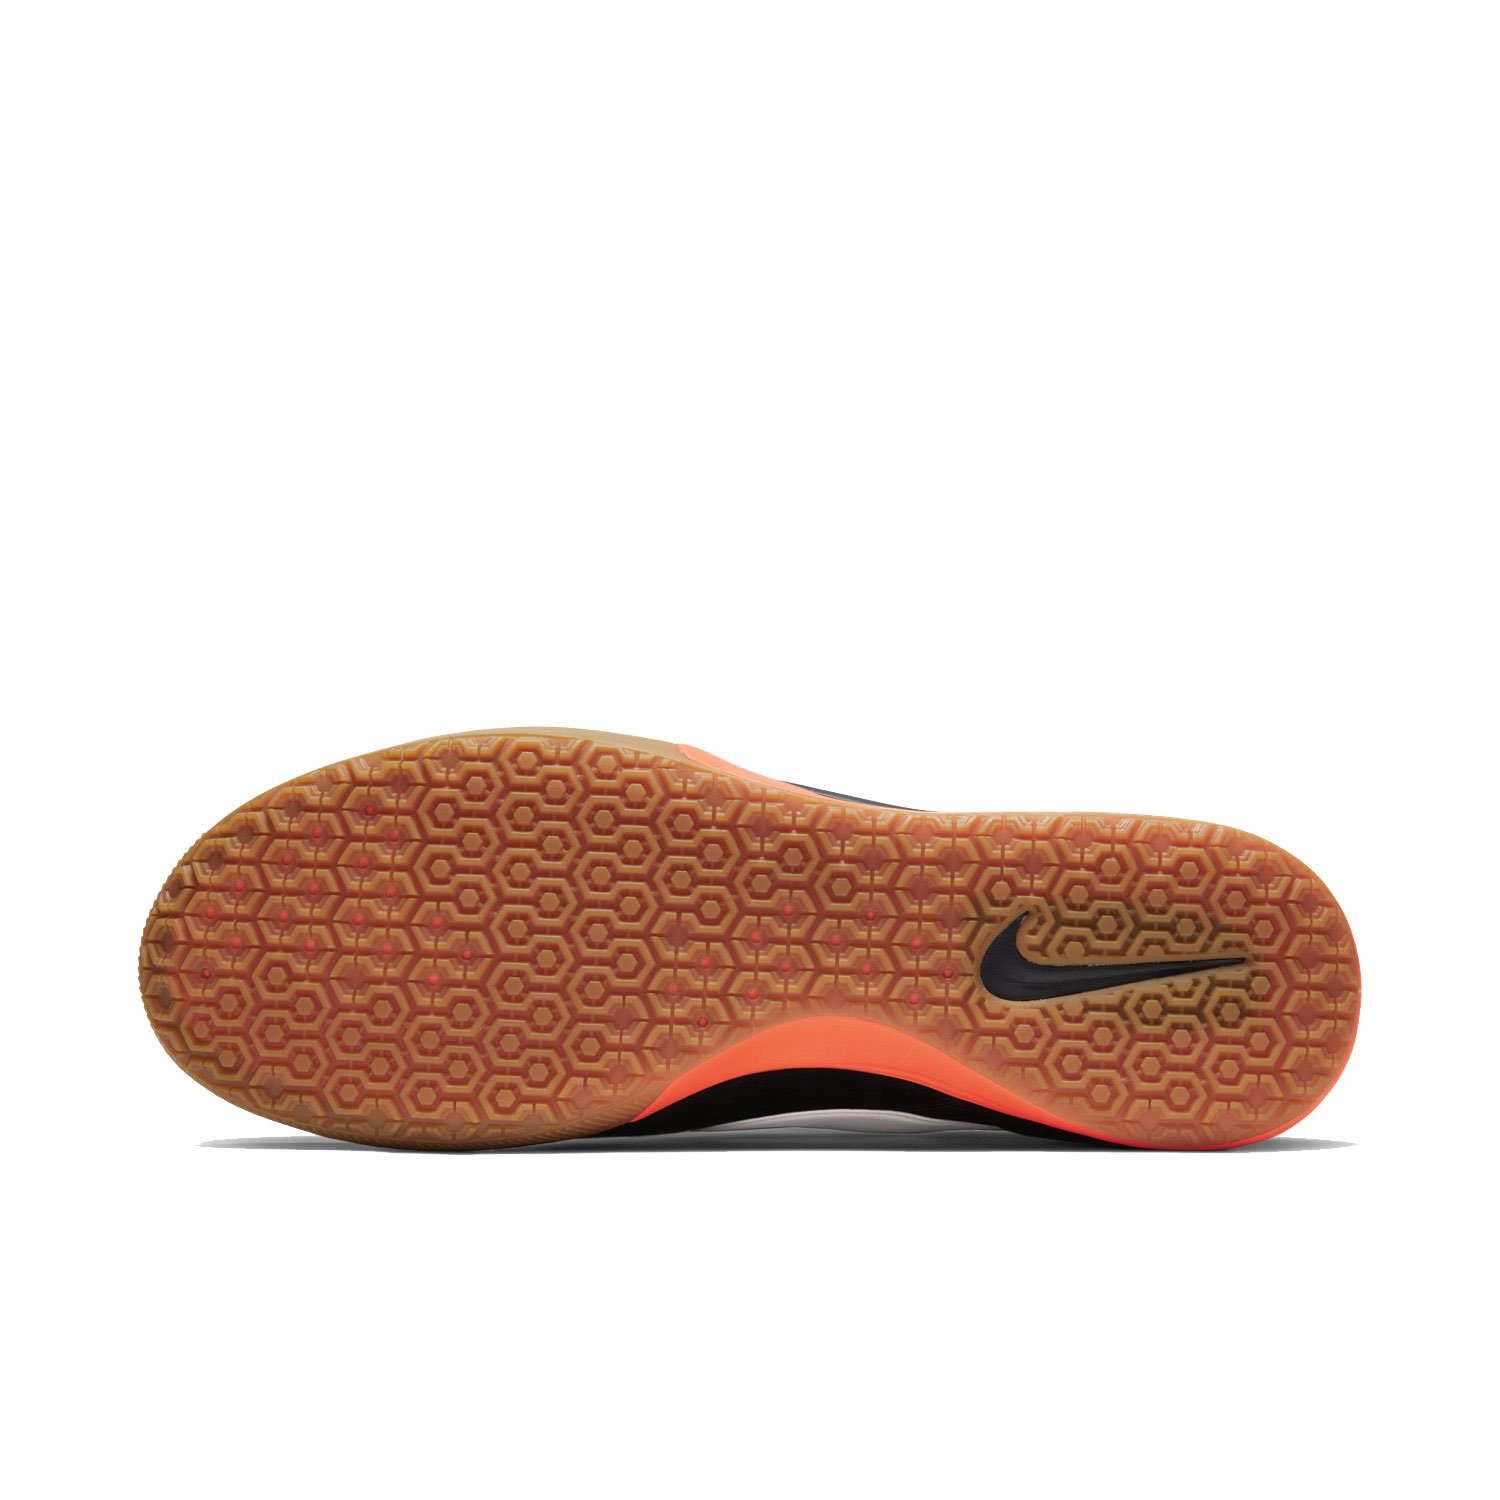 Игровая обувь для зала Nike Premier II Sala (IC)